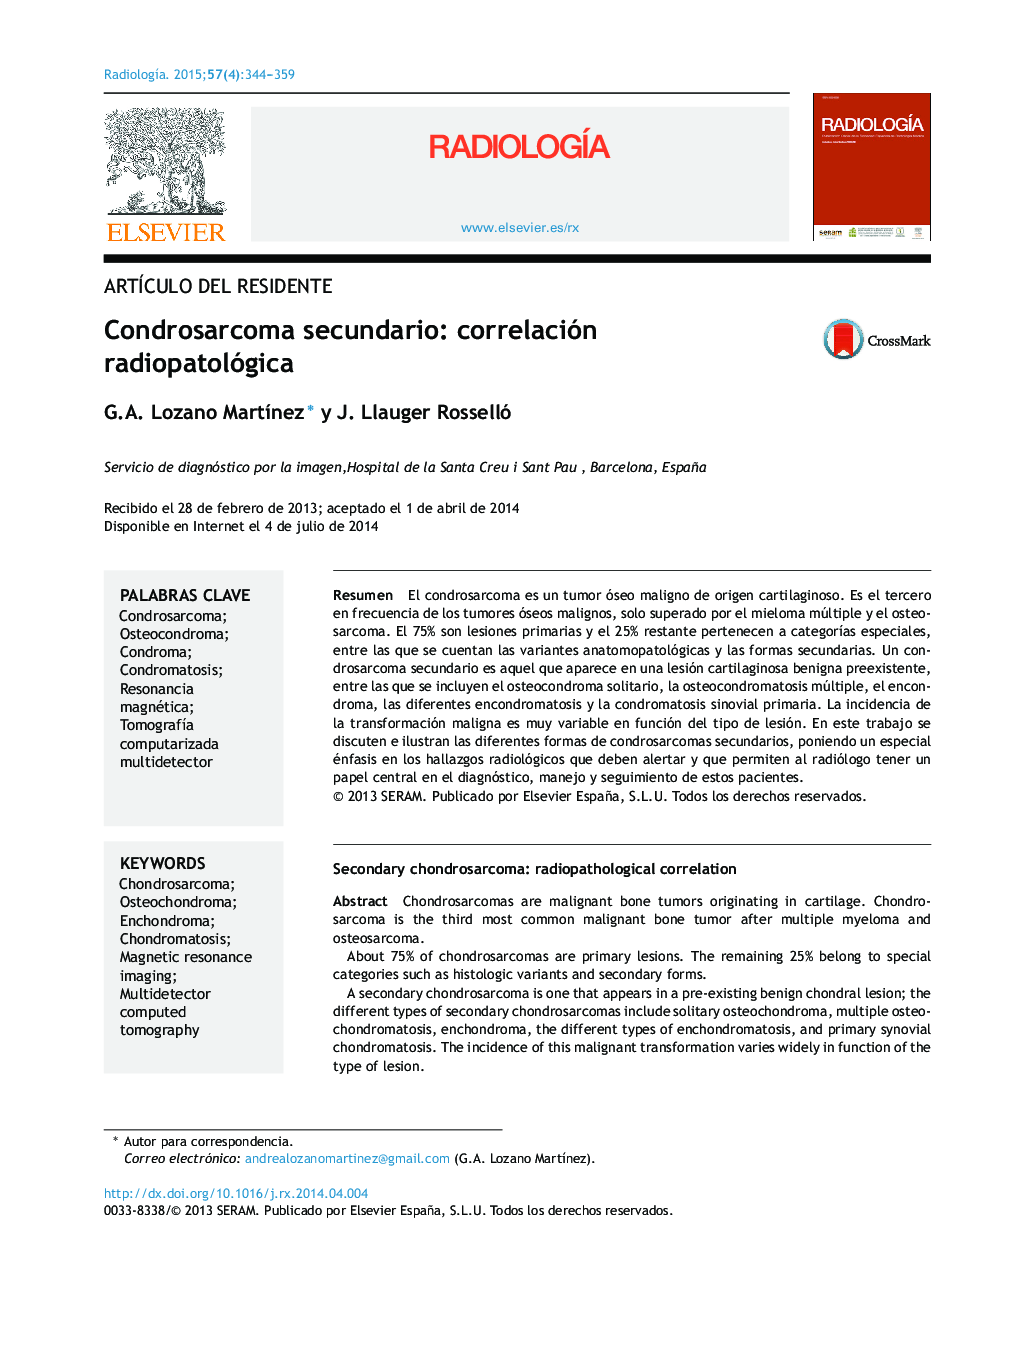 کندروسارکوم ثانویه: همبستگی رادیوپاتو-مغناطیسی 